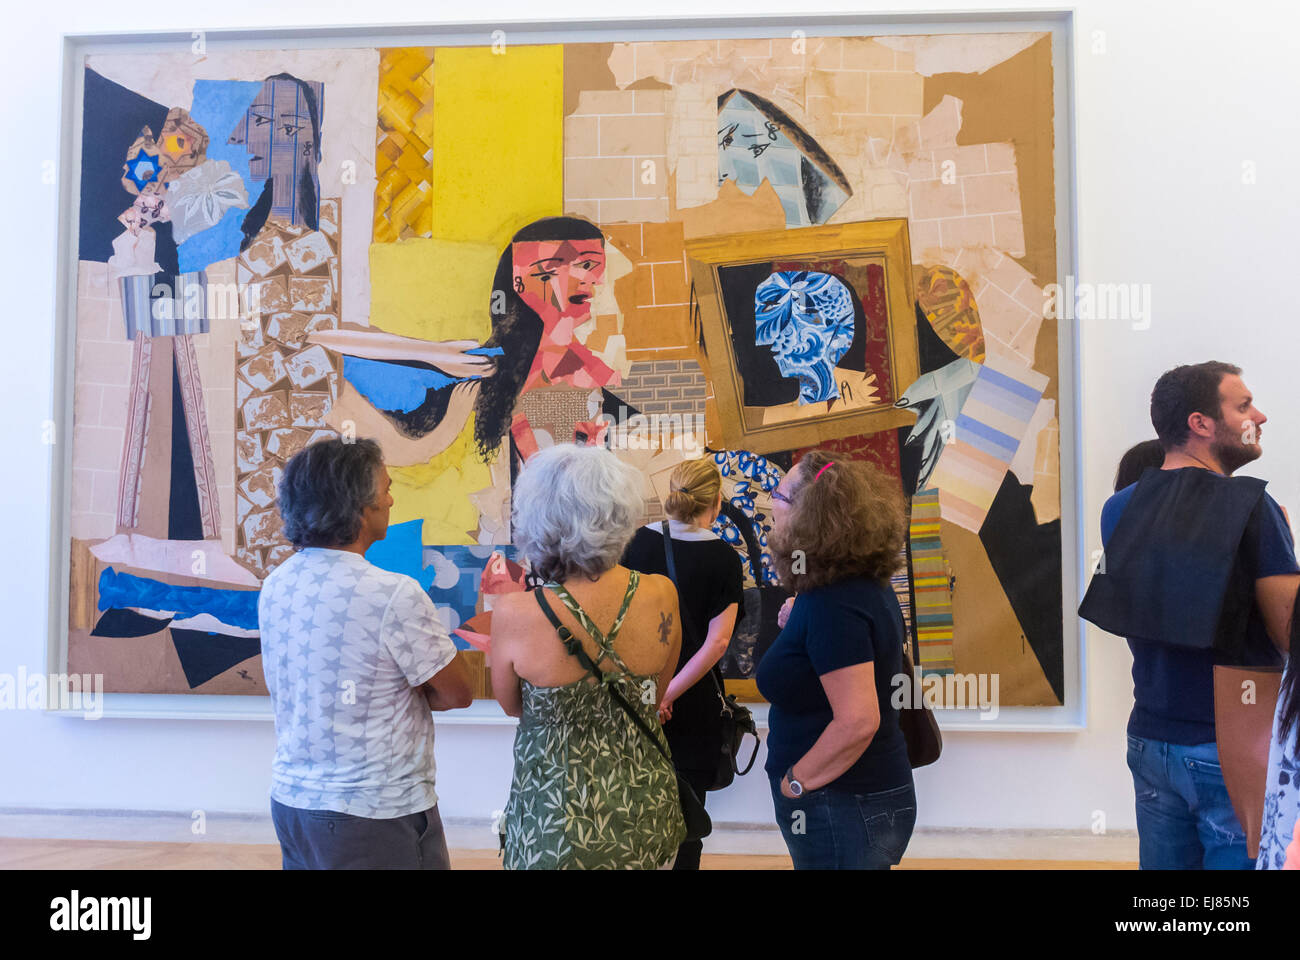 Paris, France, Groupe femmes touristes visitent l'intérieur du Musée Pablo Picasso, regardant les peintures modernes, l'art de la peinture abstraite, les gens regardant les peintures Picasso, l'art moderne style Picasso, MUSÉE PICASSO Paris Banque D'Images